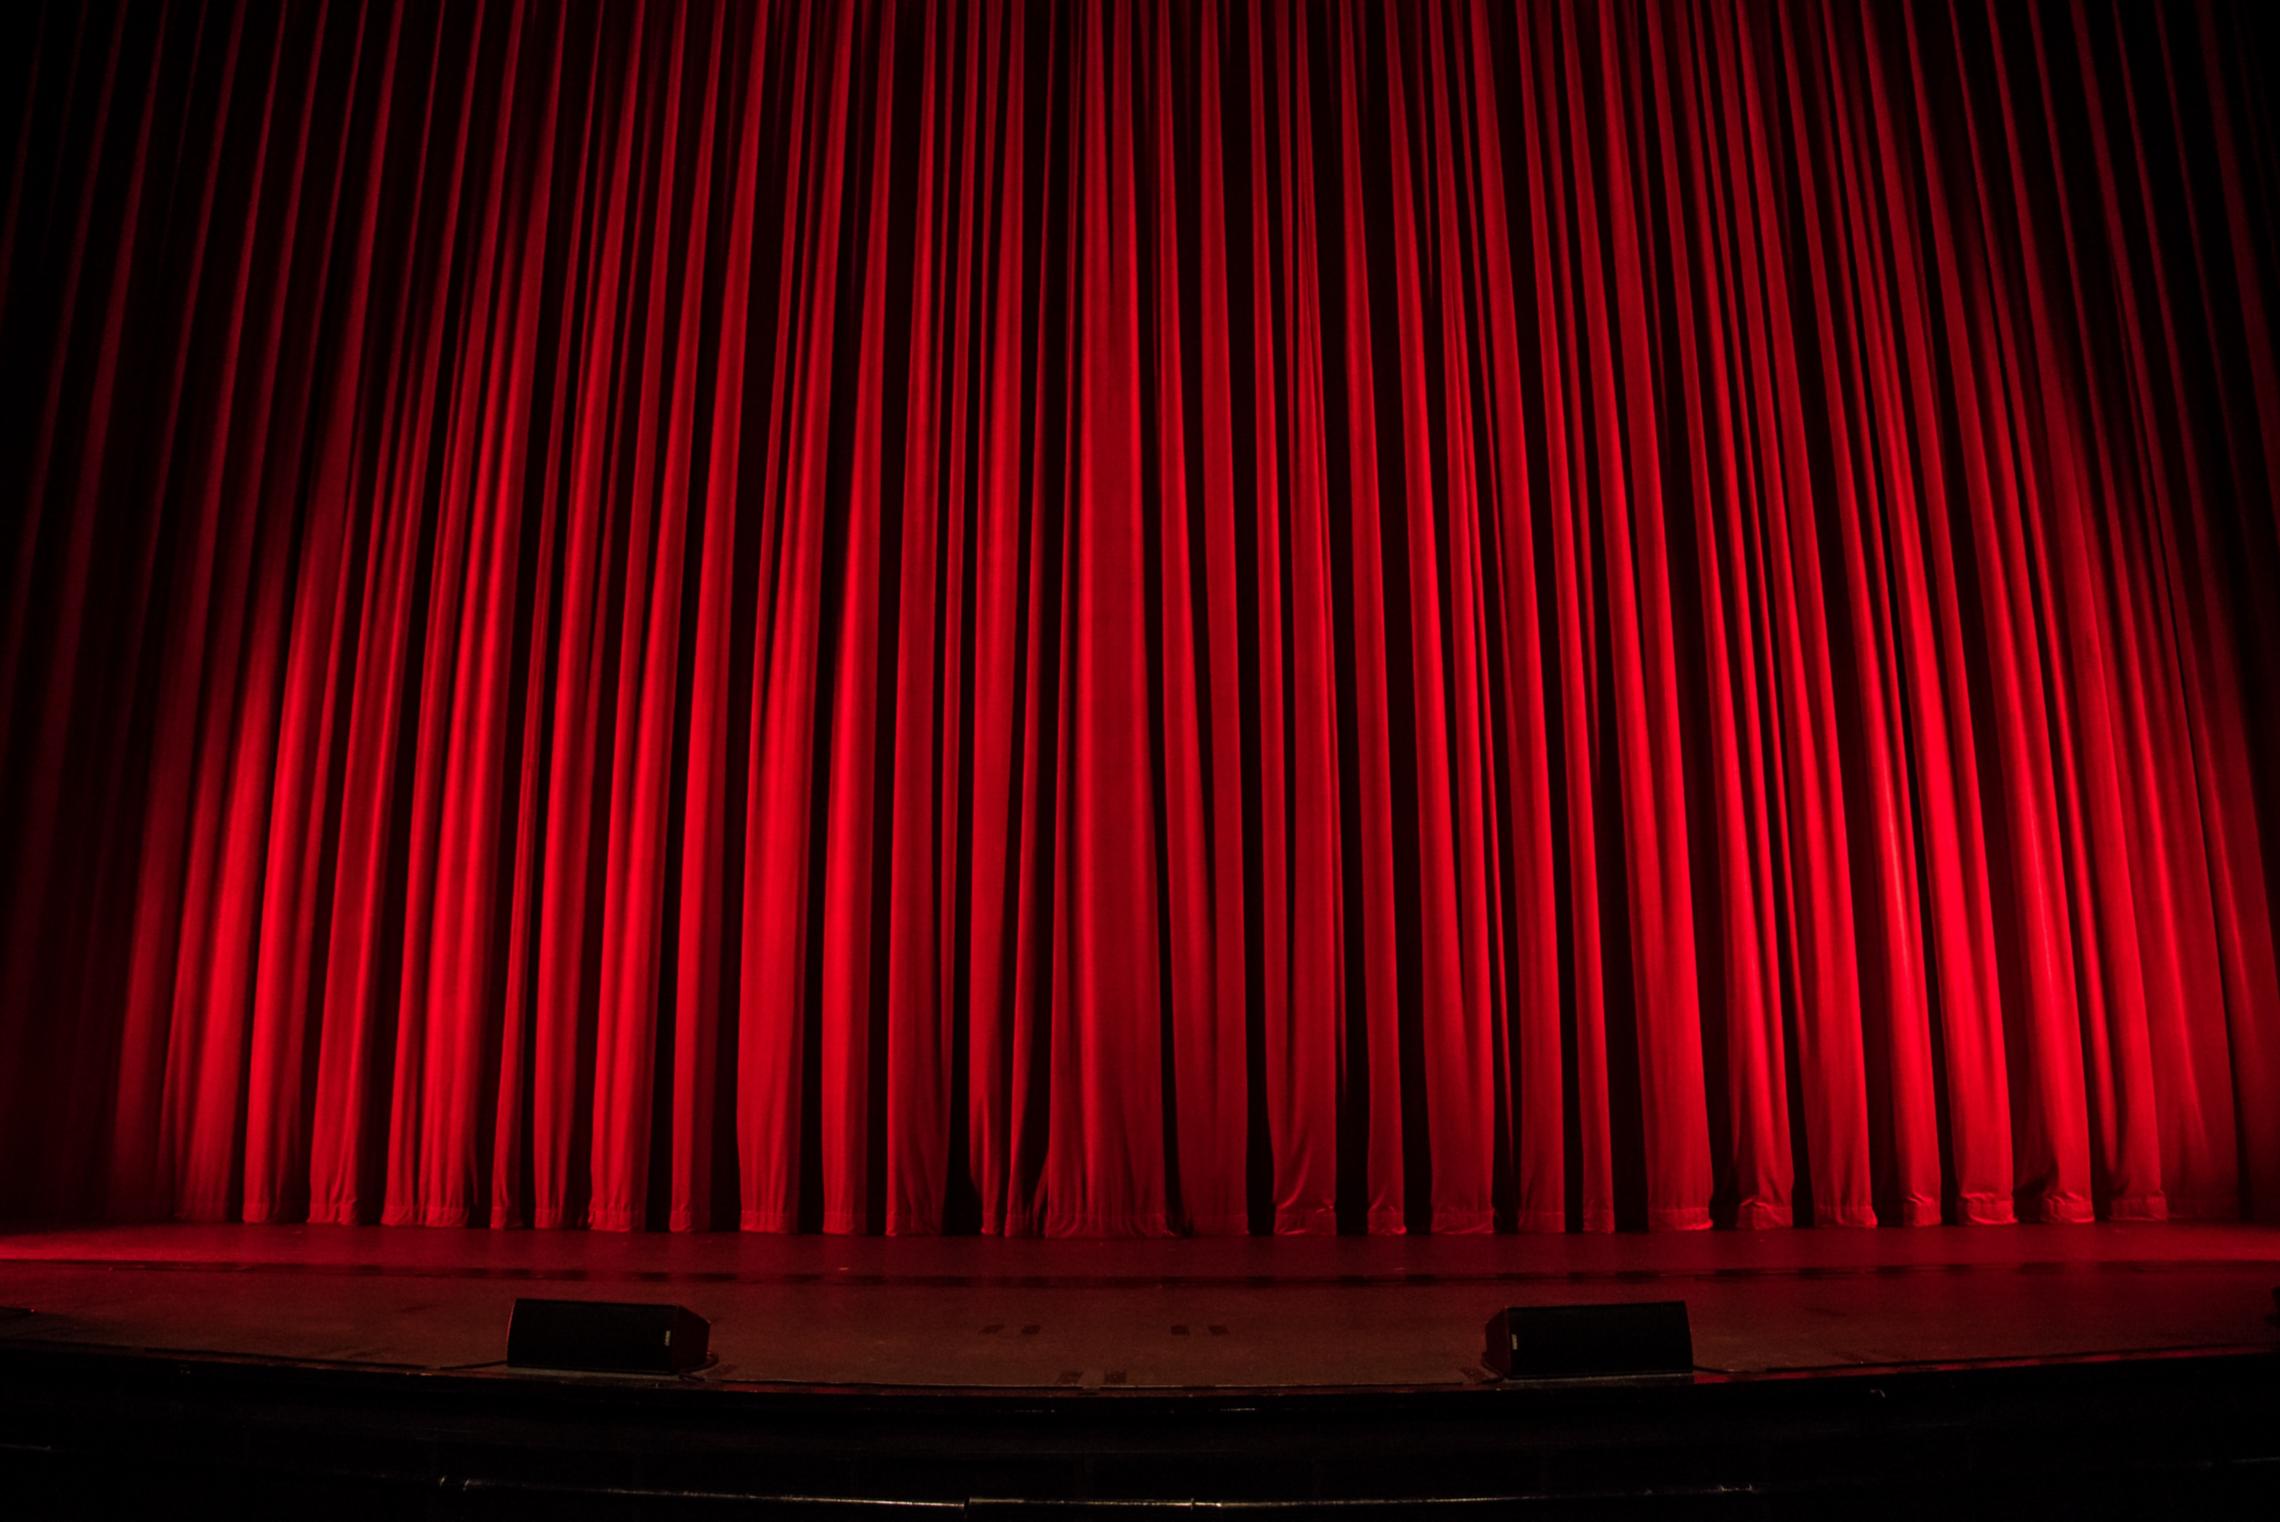 Bühnenvorhang Theater (c) Foto von Rob Laughter auf Unsplash